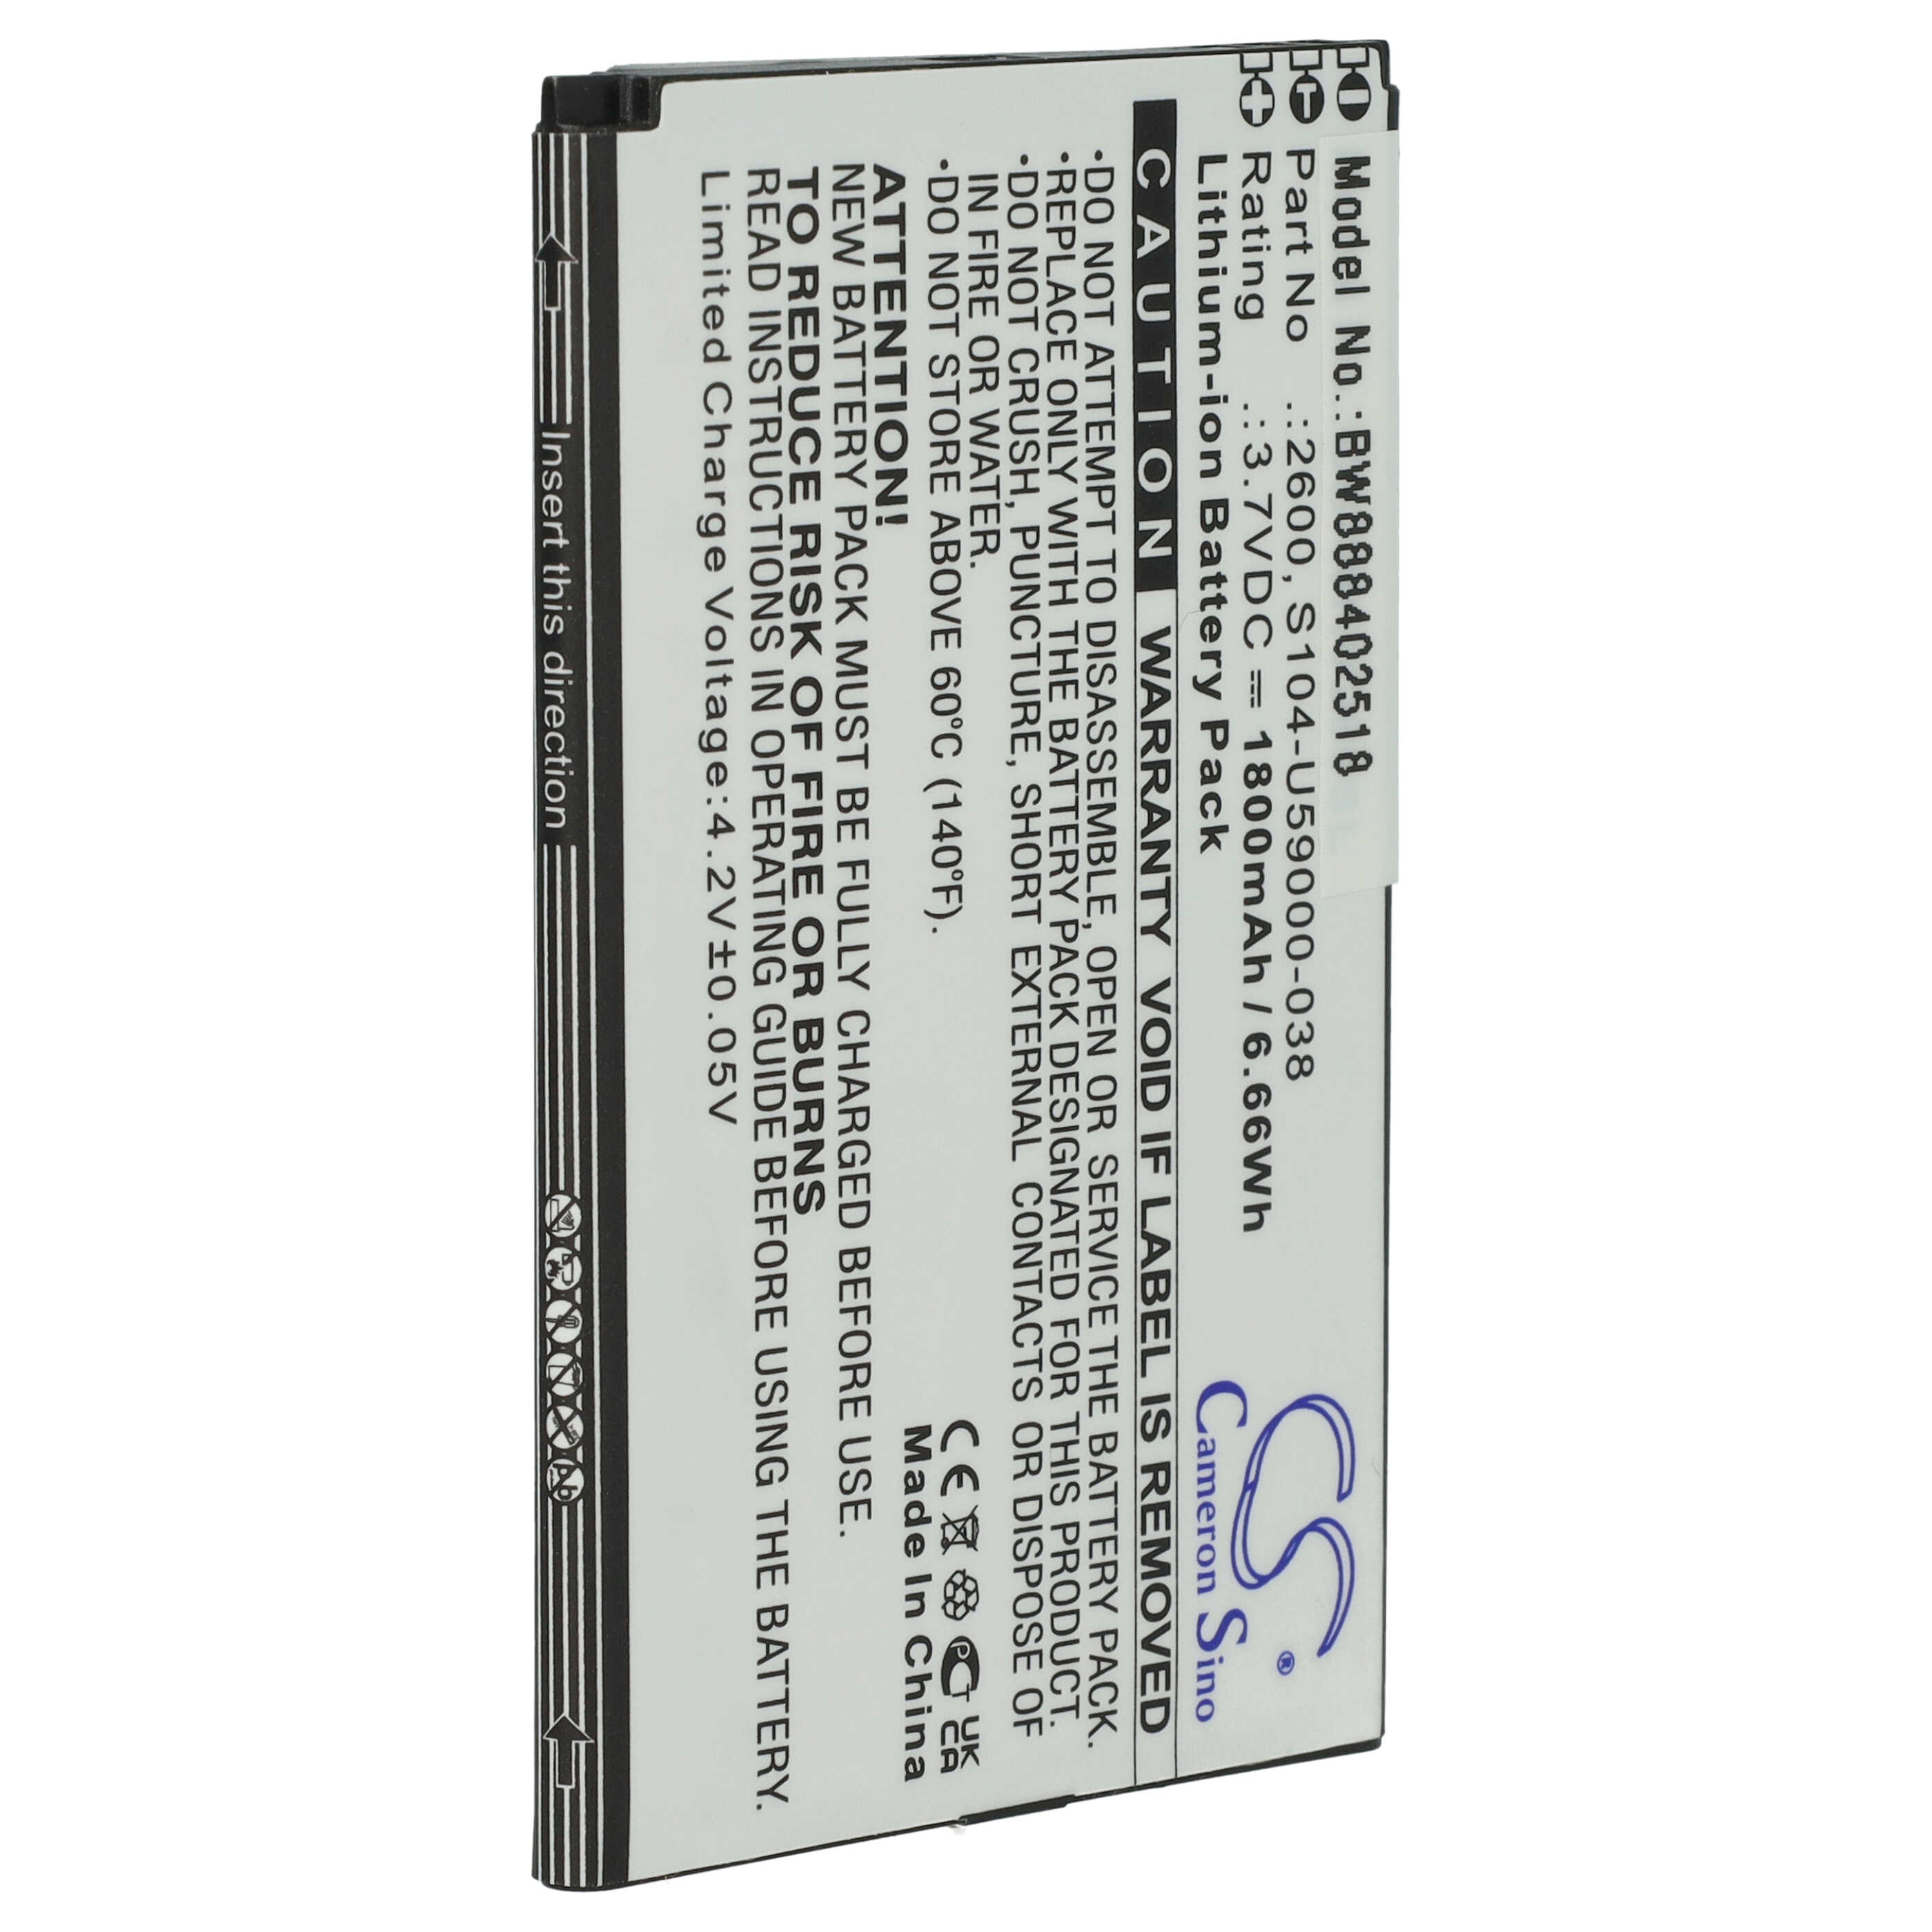 Akumulator bateria do telefonu smartfona zam. Wiko 2600, S104-U59000-038 - 1800mAh, 3,7V, Li-Ion